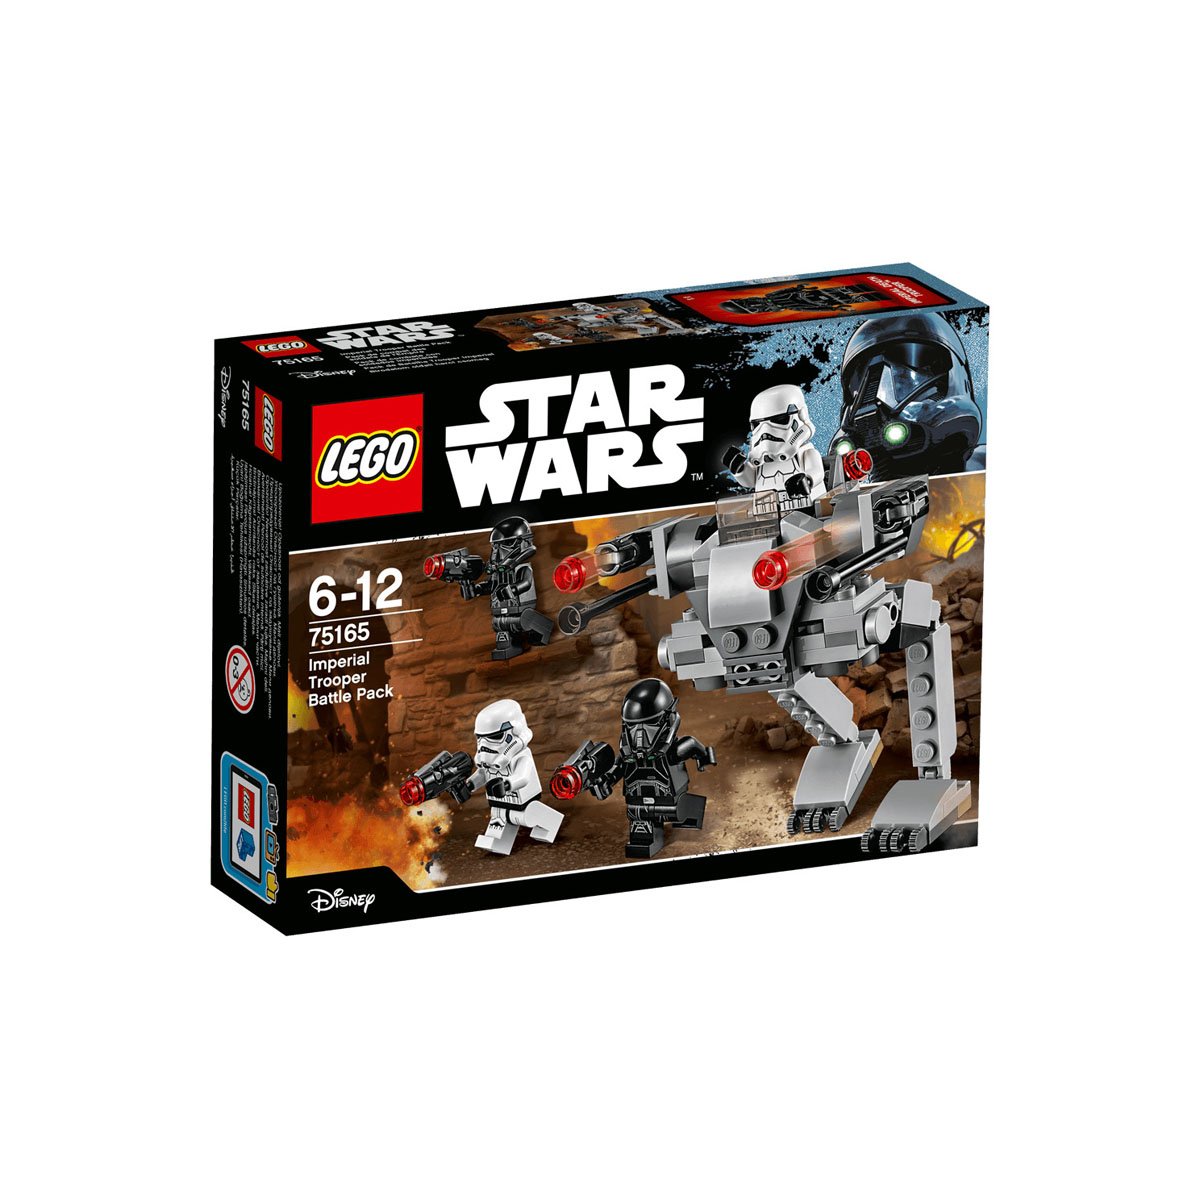 Pack de Combate con Soldados Imperiales Lego